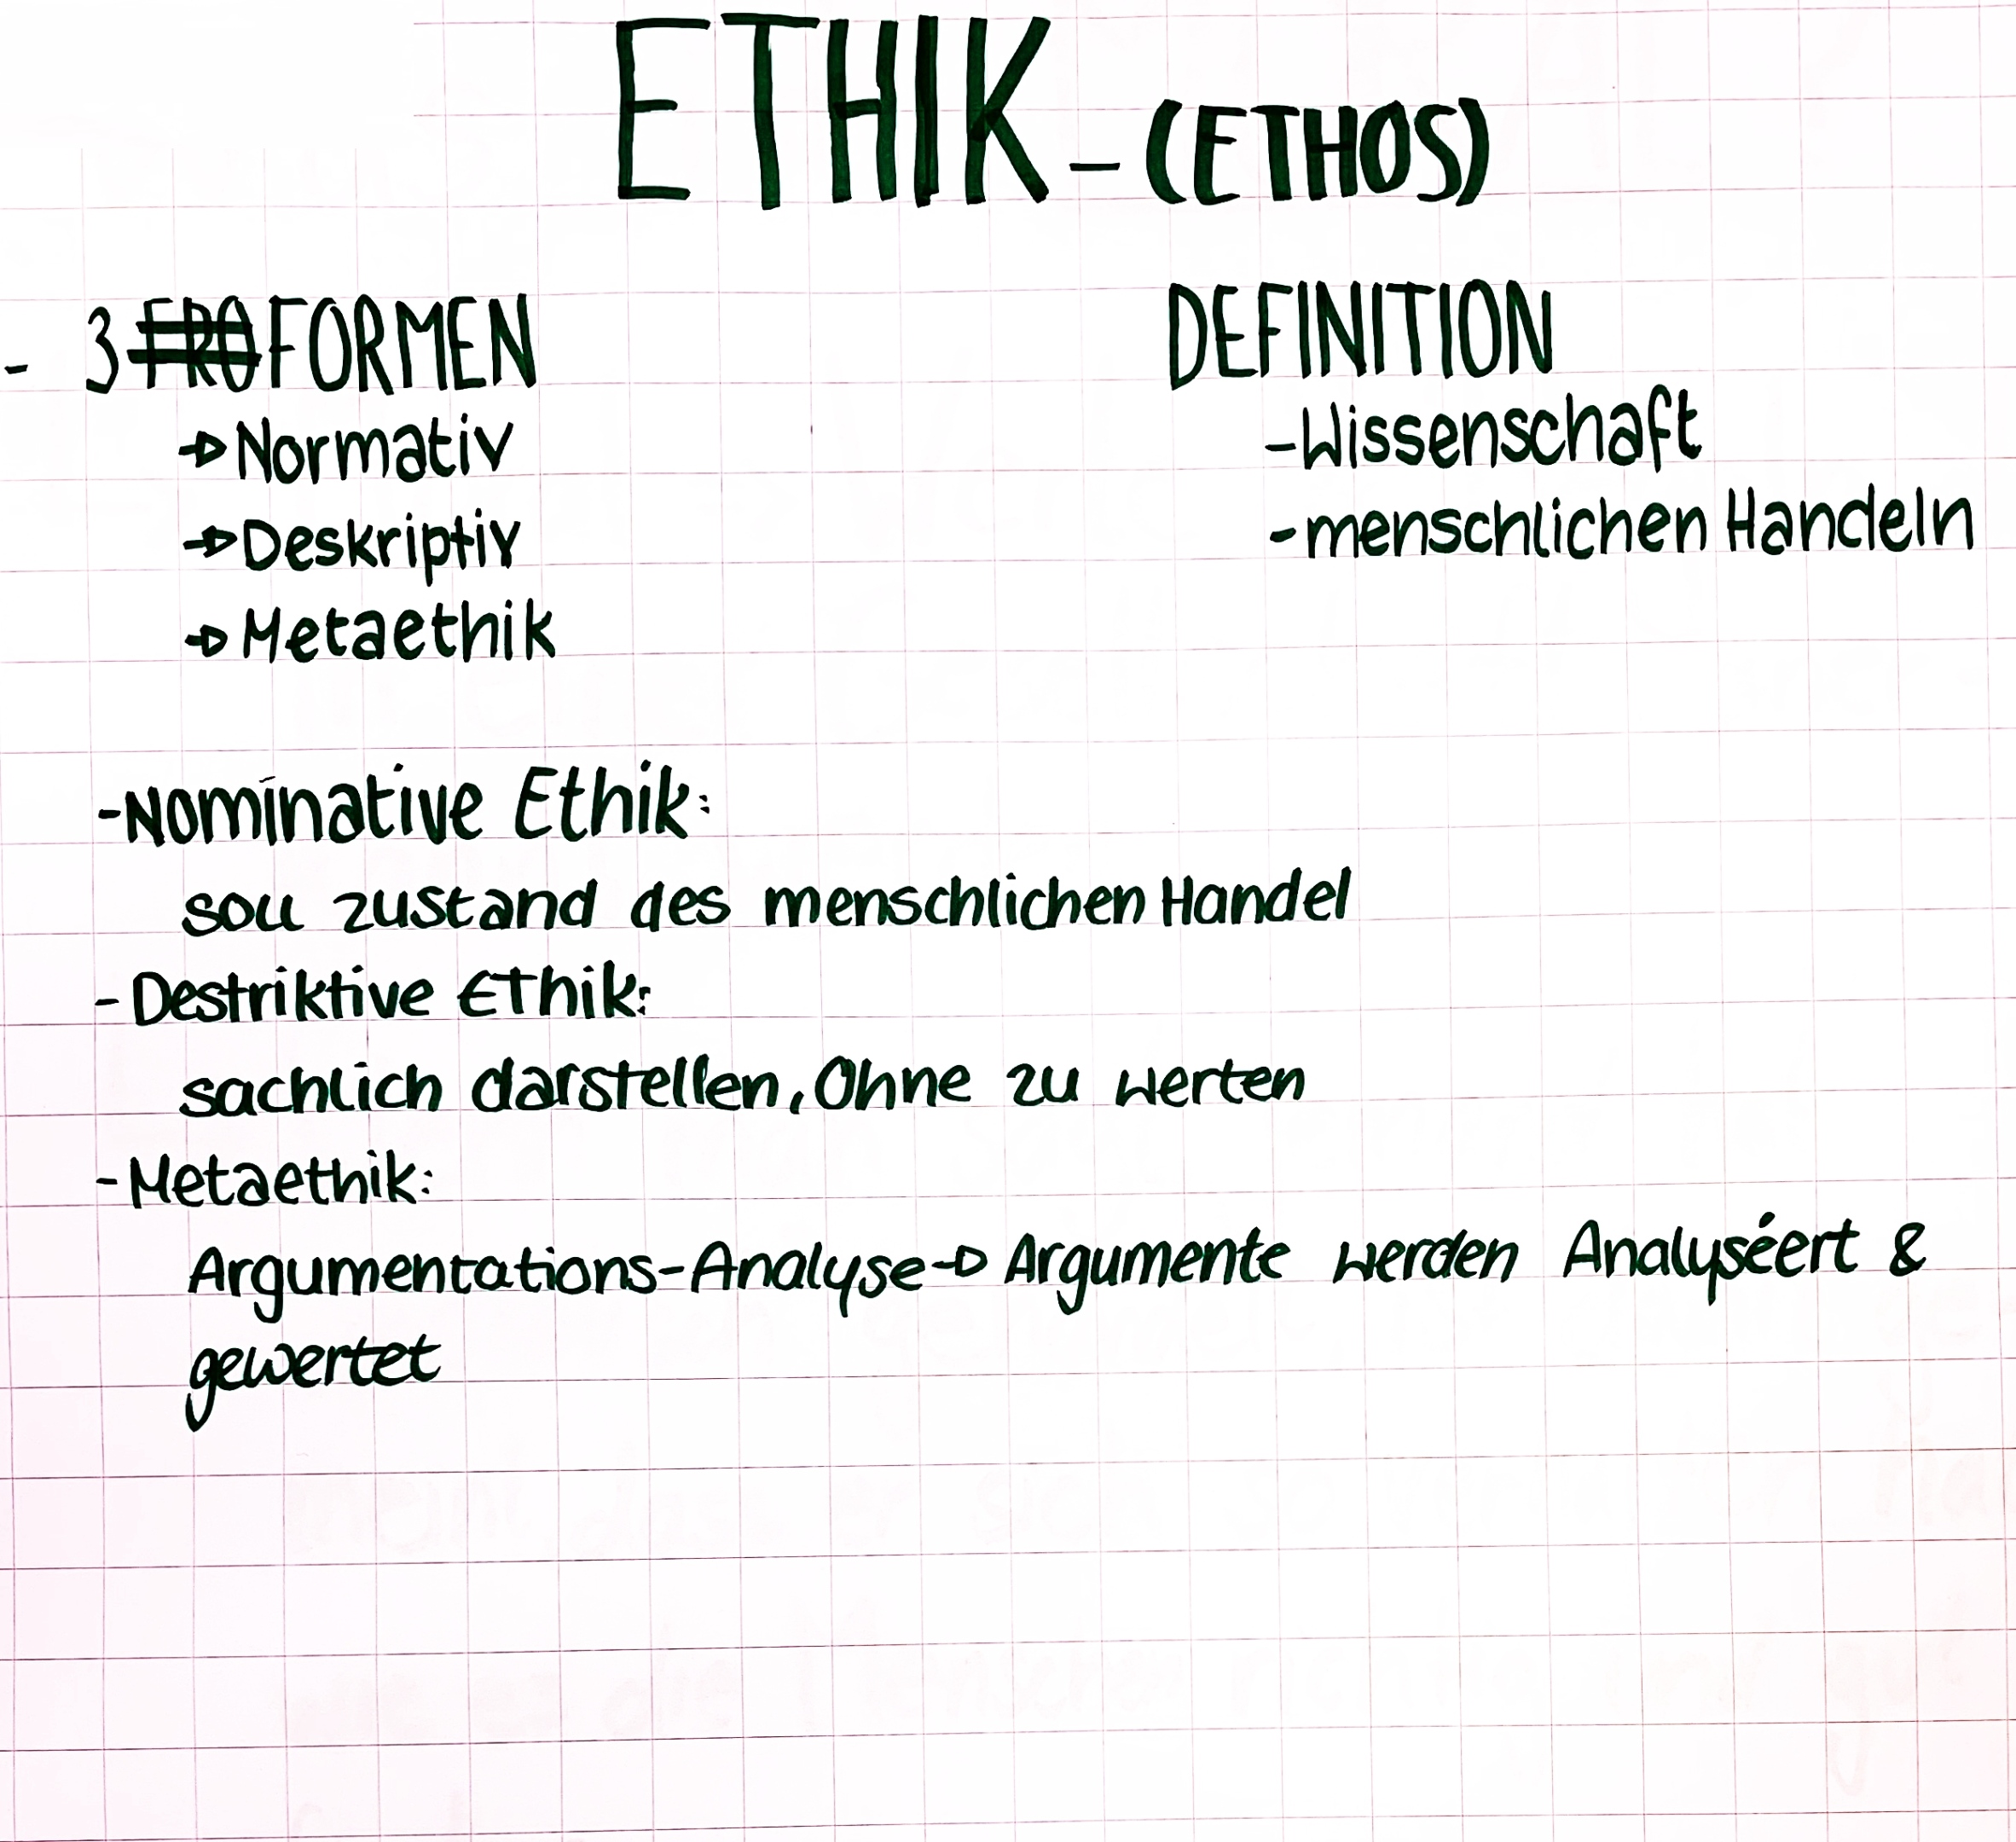 Ethik - Definition